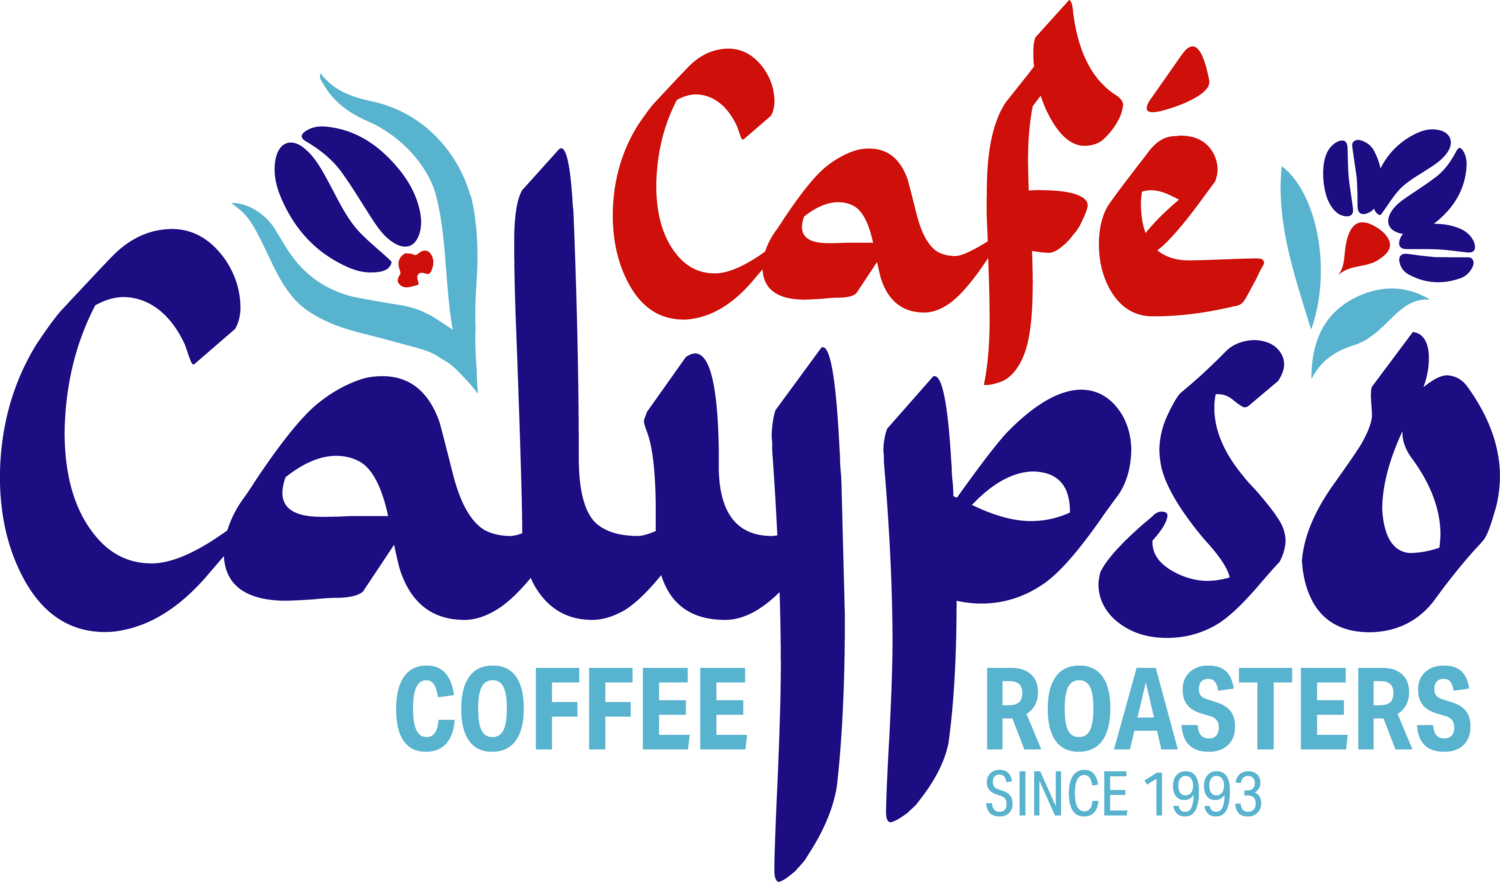 Café Calypso